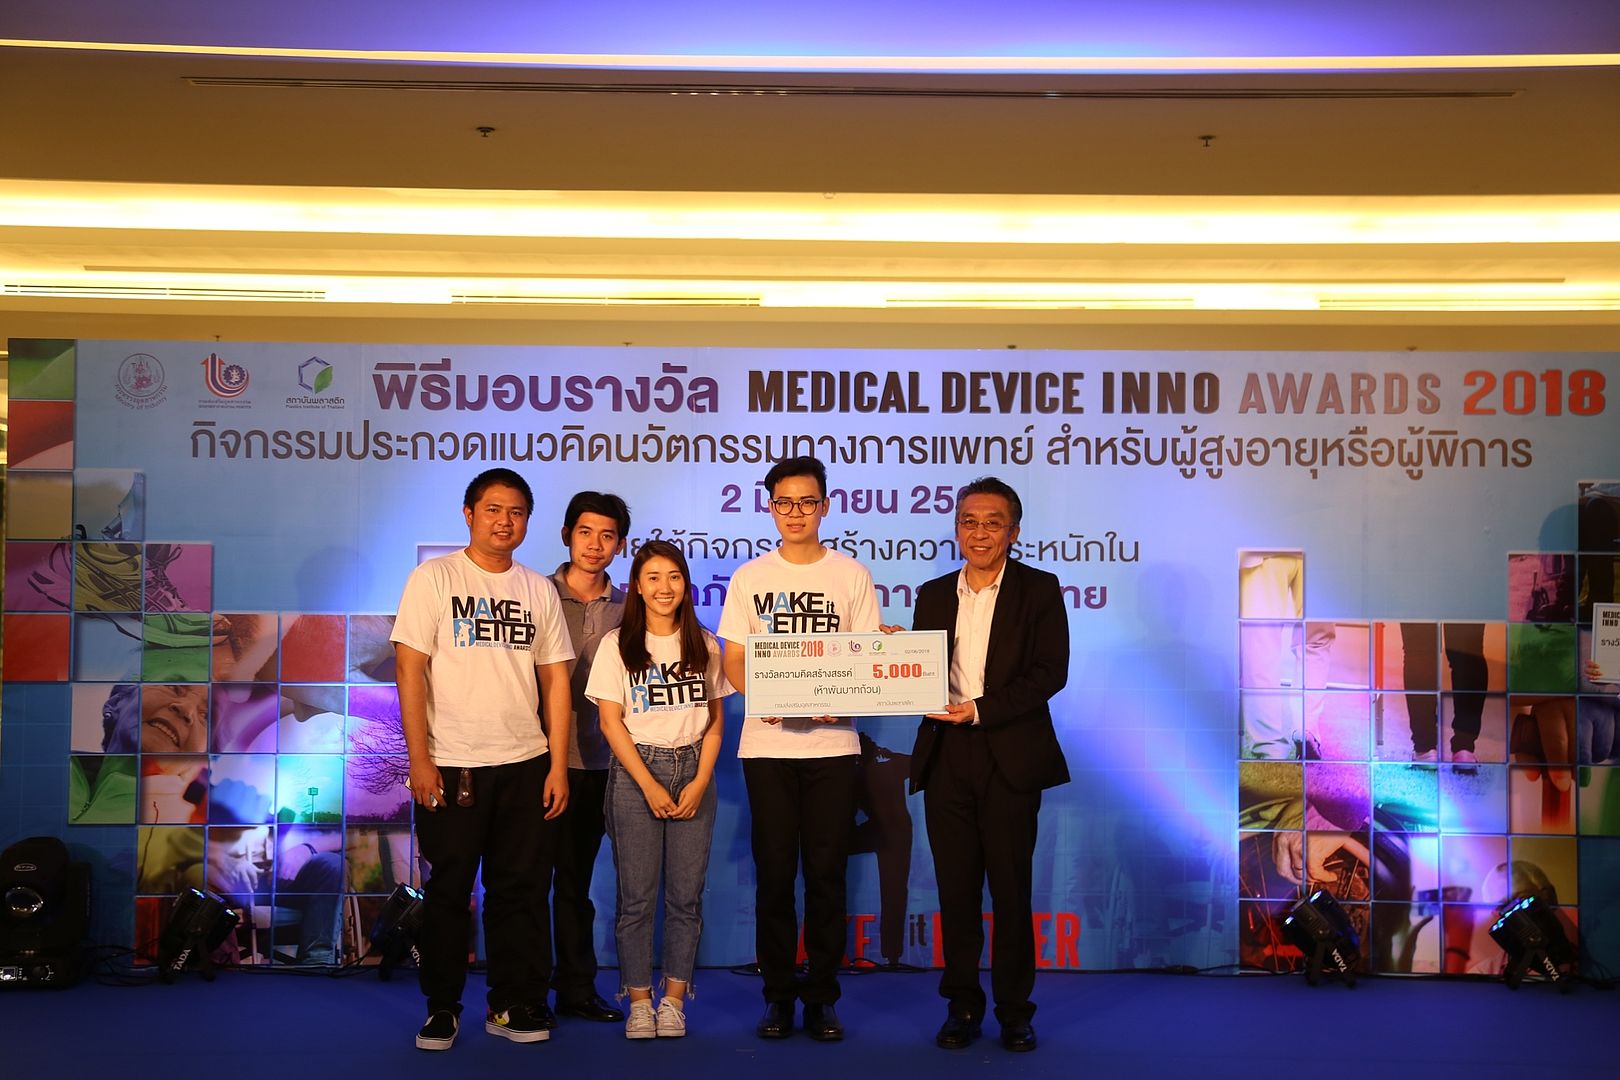 นศ.พยาบาล จับมือ นศ.ม.รังสิต คว้ารางวัลความคิดสร้างสรรค์ Medical Device Inno Awards 2018